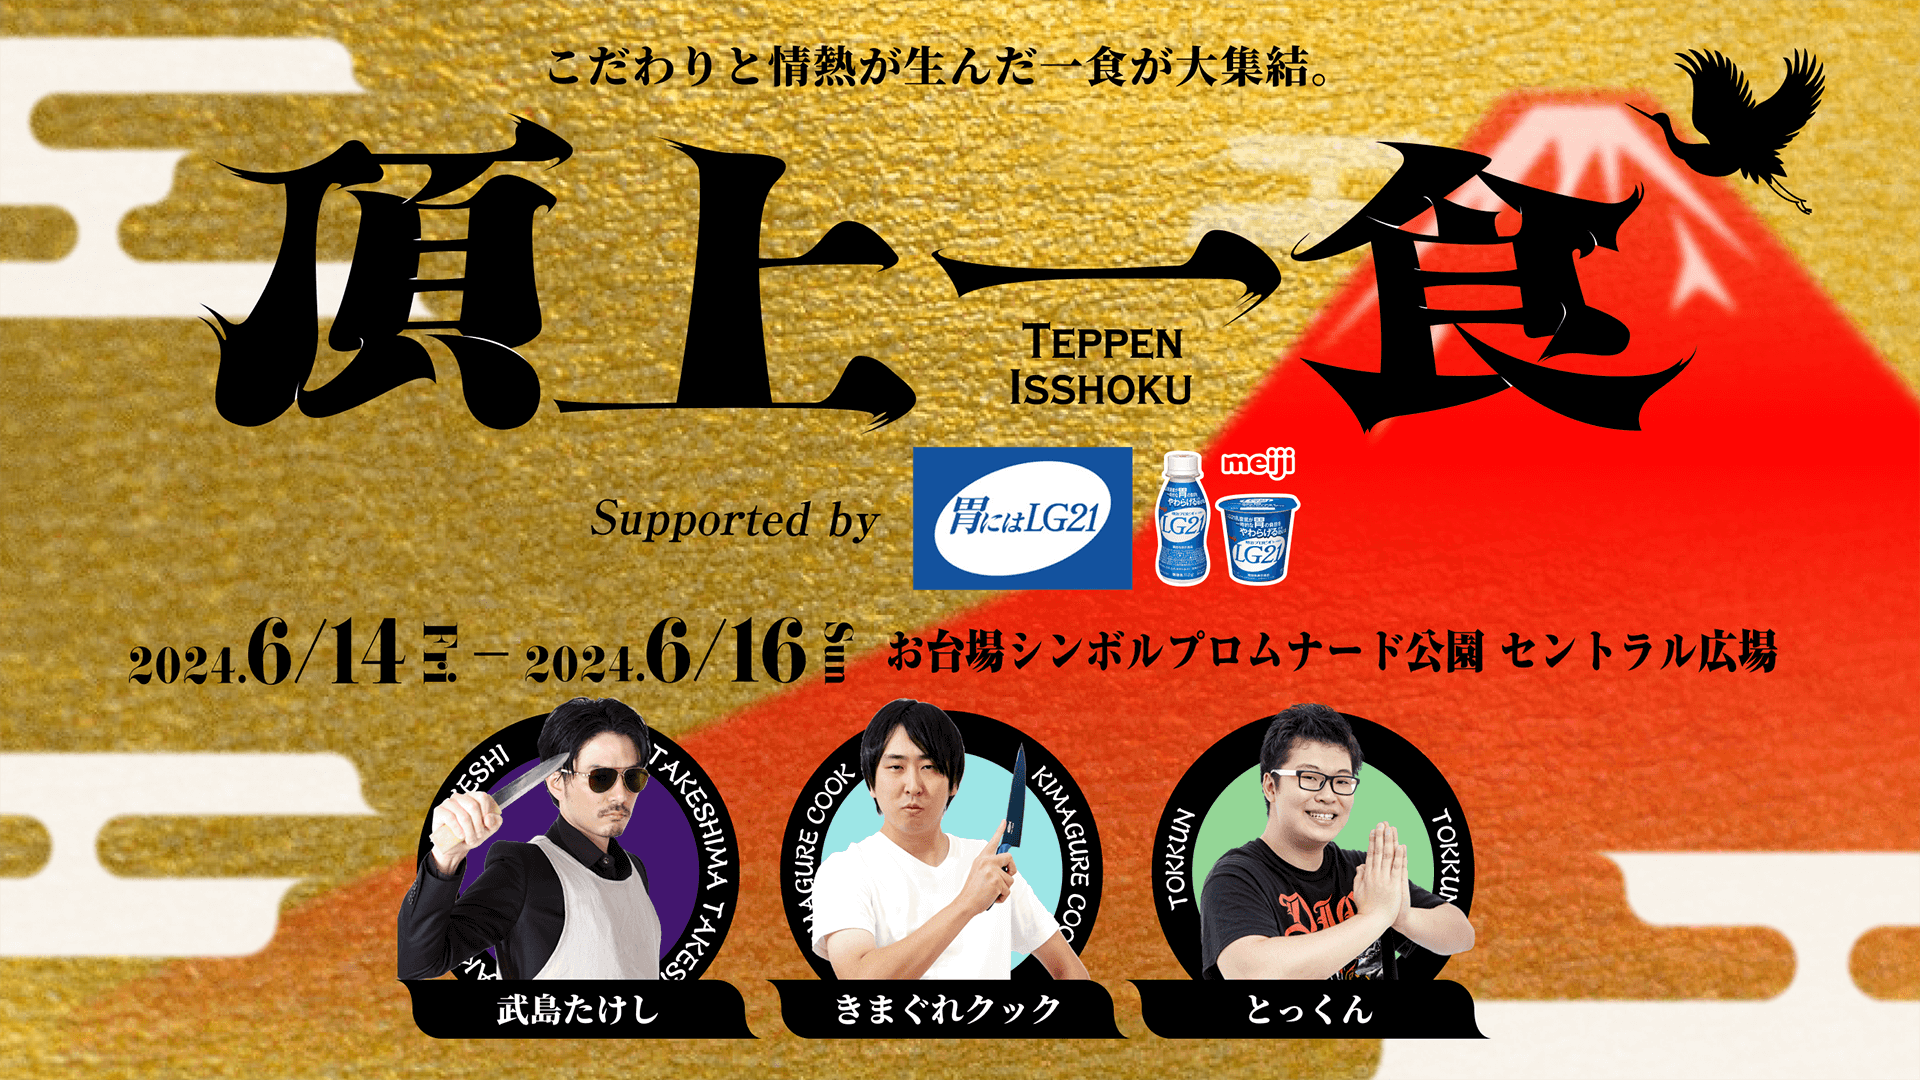 きまぐれクック、武島たけし、とっくんとコラボした食フェス 「頂上一食 ～TEPPEN ISSHOKU～」 冠スポンサーは「明治プロビオヨーグルトLG21」に決定！